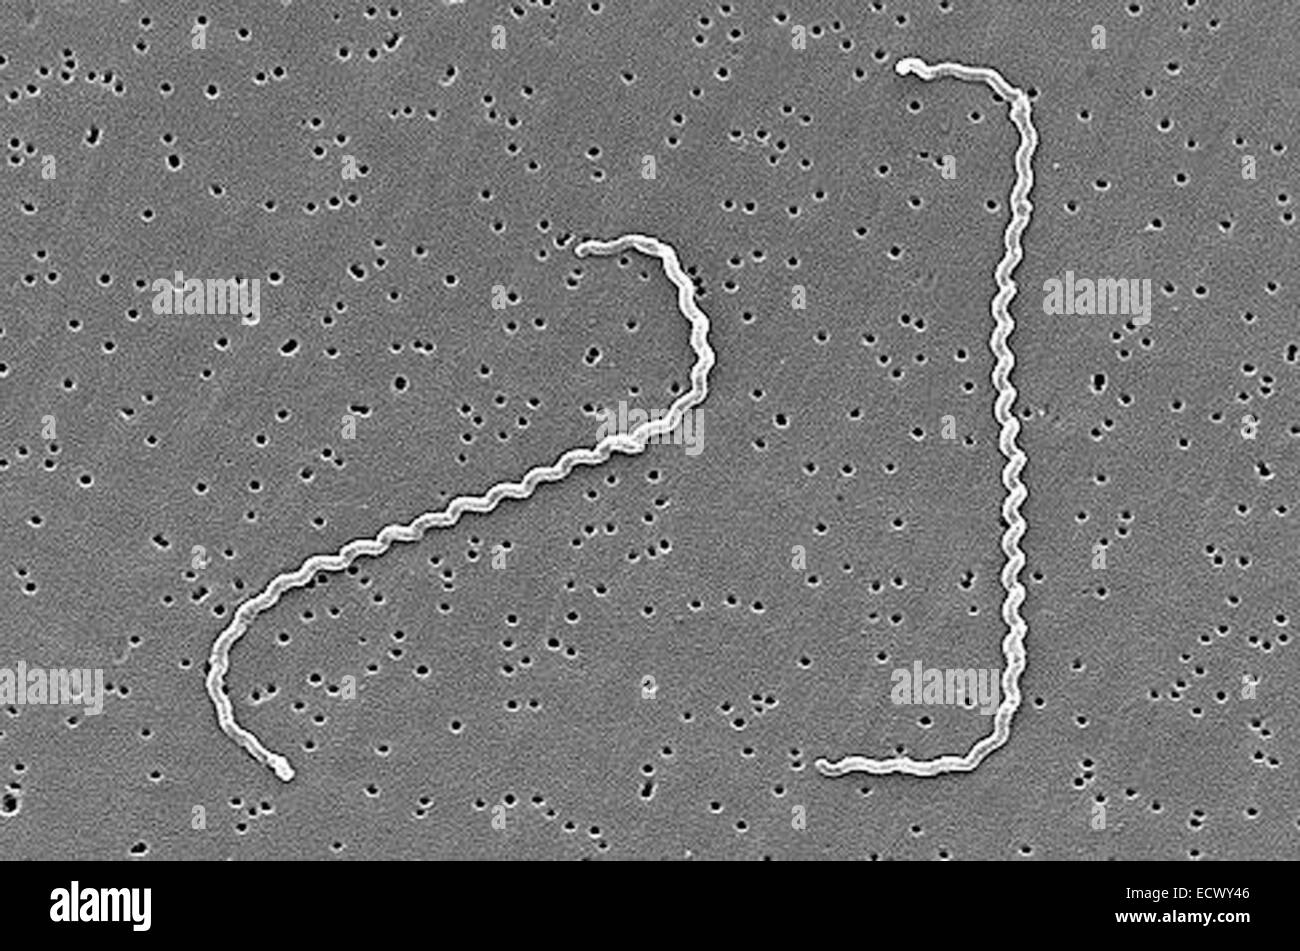 Micrografía electrónica de la bacteria leptospira. Foto de stock